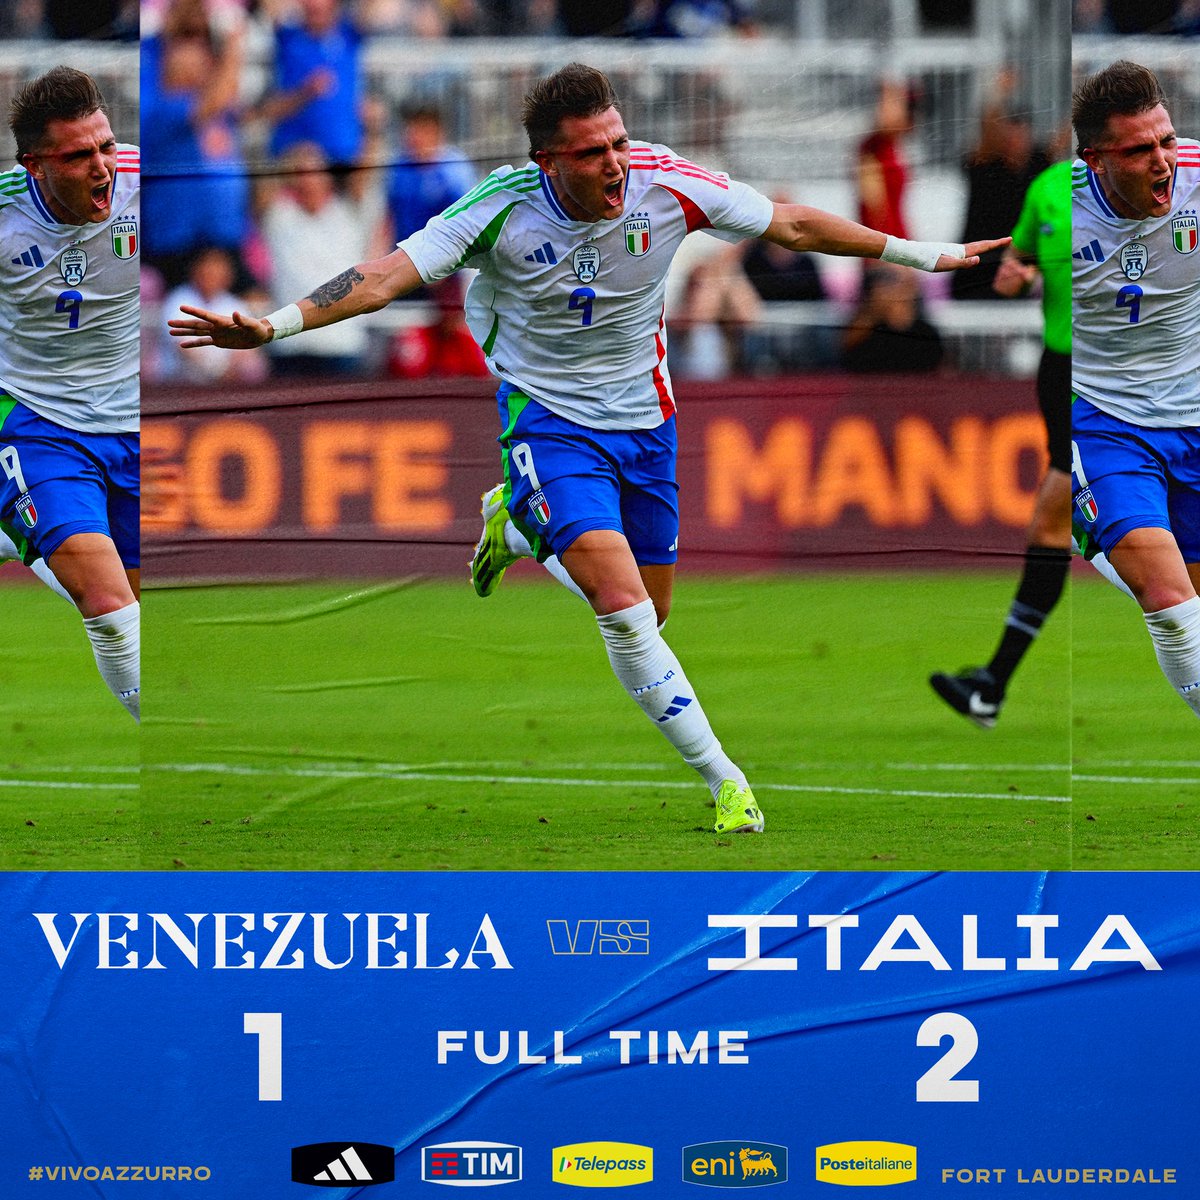 A friendly win in Florida! 👌 🇺🇸 #VENITA #Azzurri #VivoAzzurro